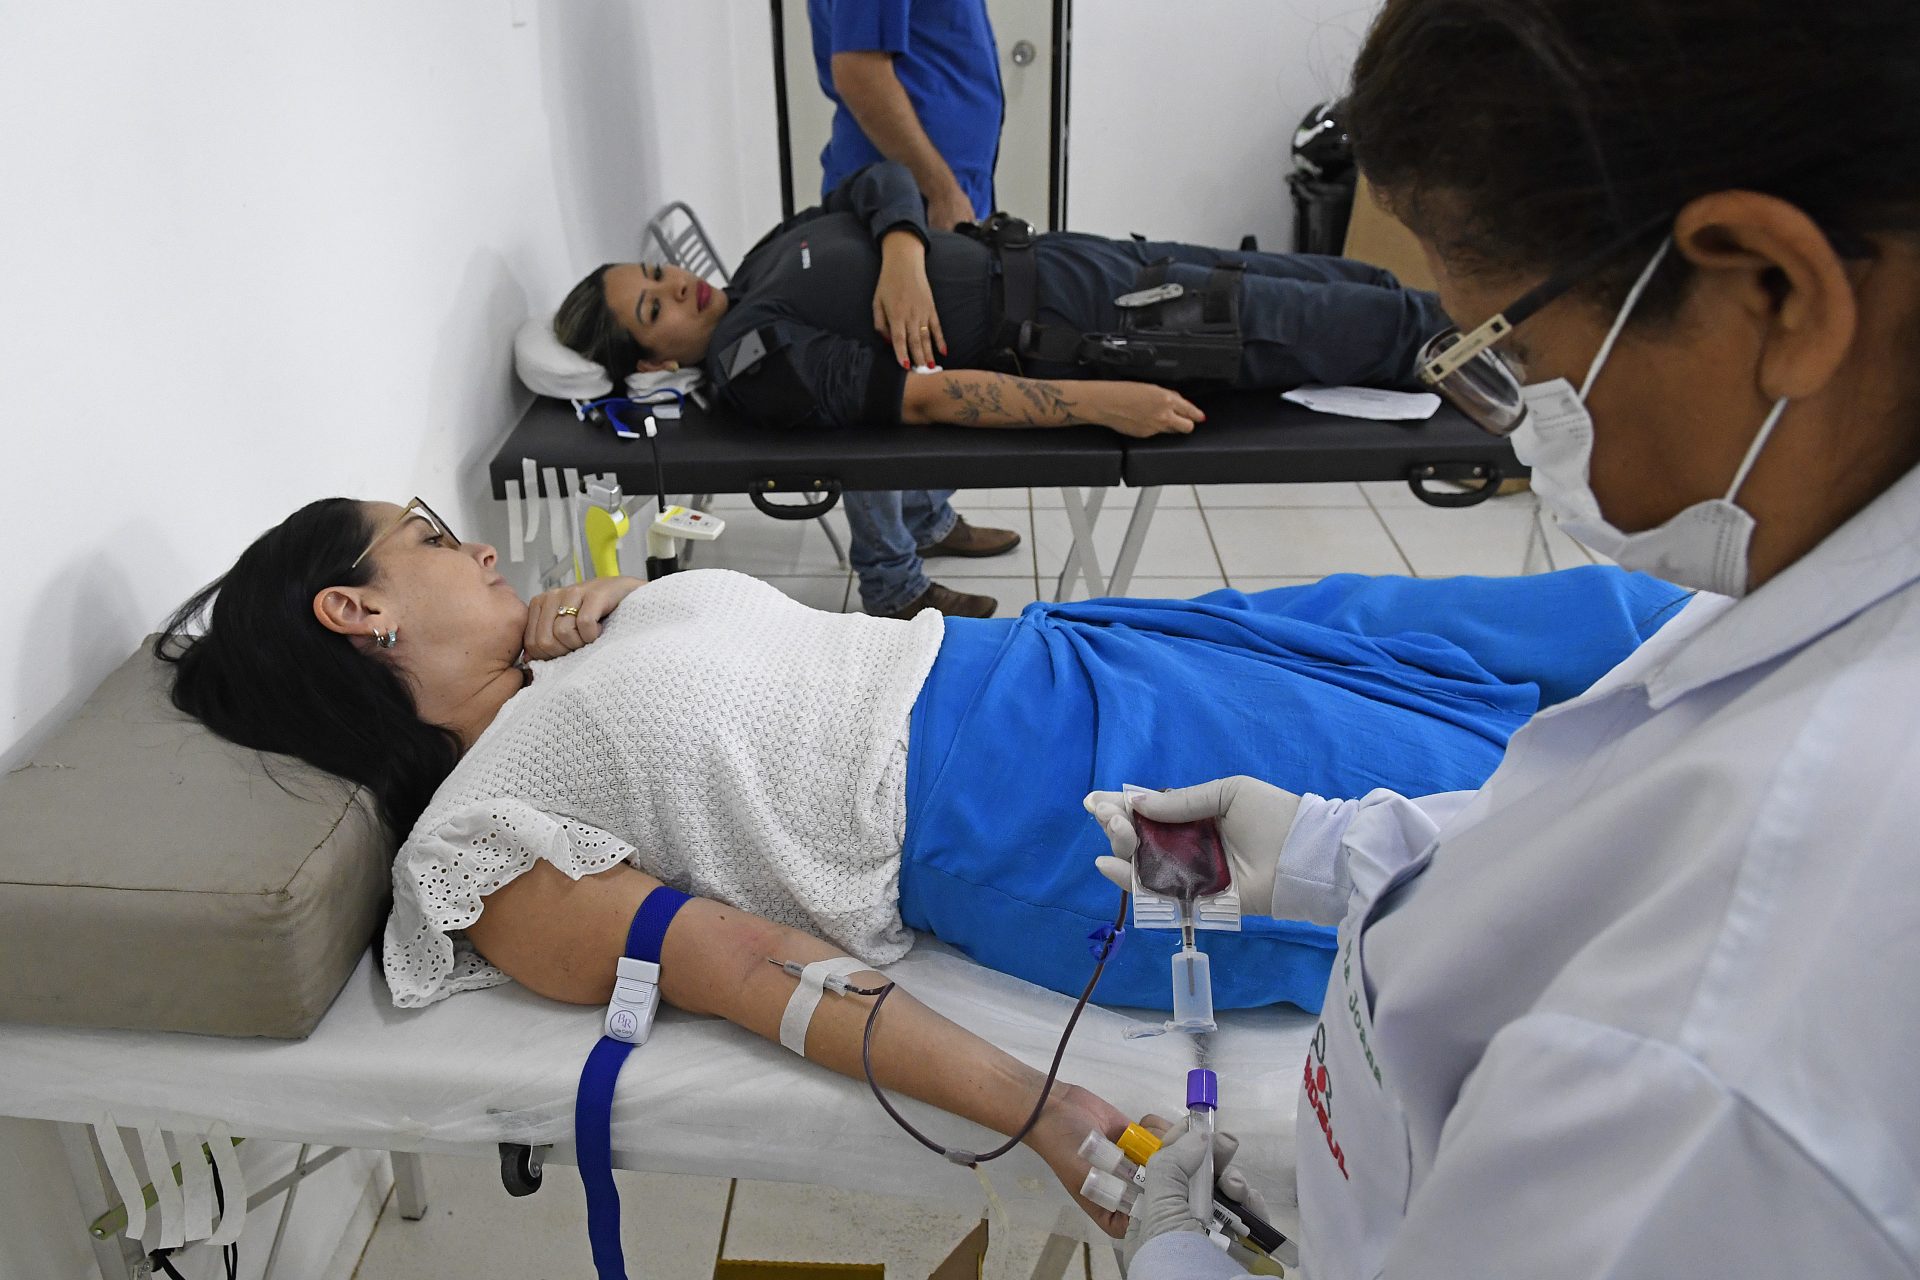 Doacao de sangue na governadoria Foto Bruno Rezende 07 scaled Ato de solidariedade, doadores de sangue podem salvar até quatro vidas com apenas 450ml